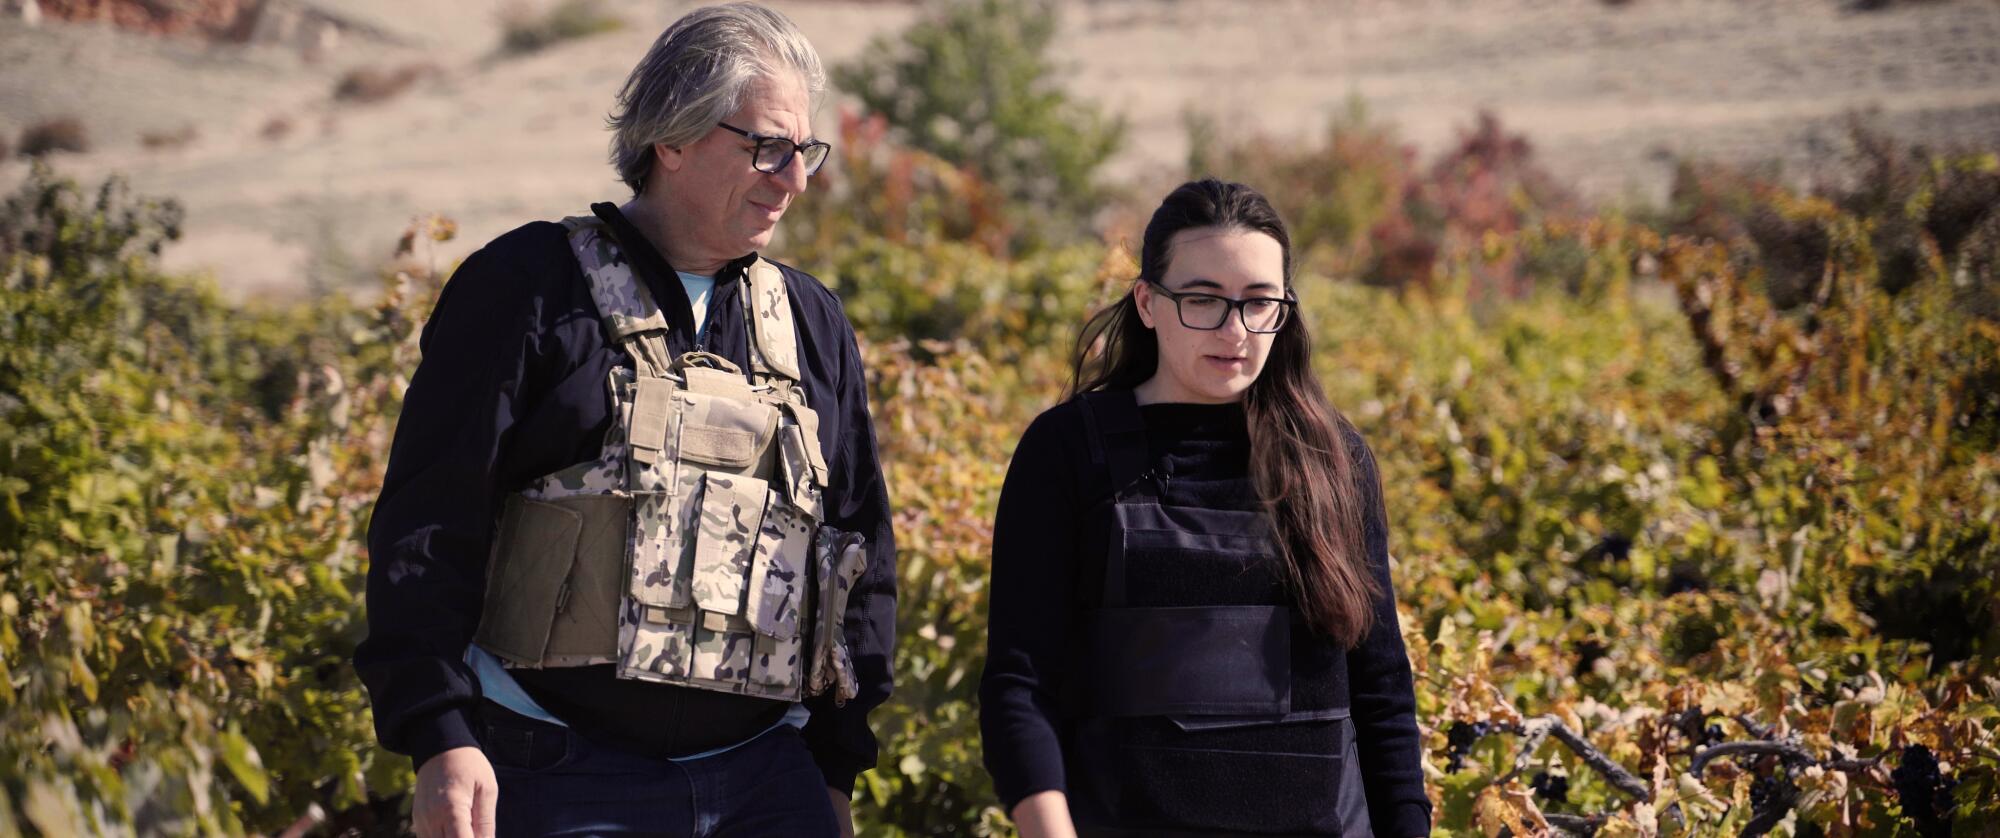 Ein Vater und eine Tochter in kugelsicheren Westen gehen in ihrem Weinberg spazieren.